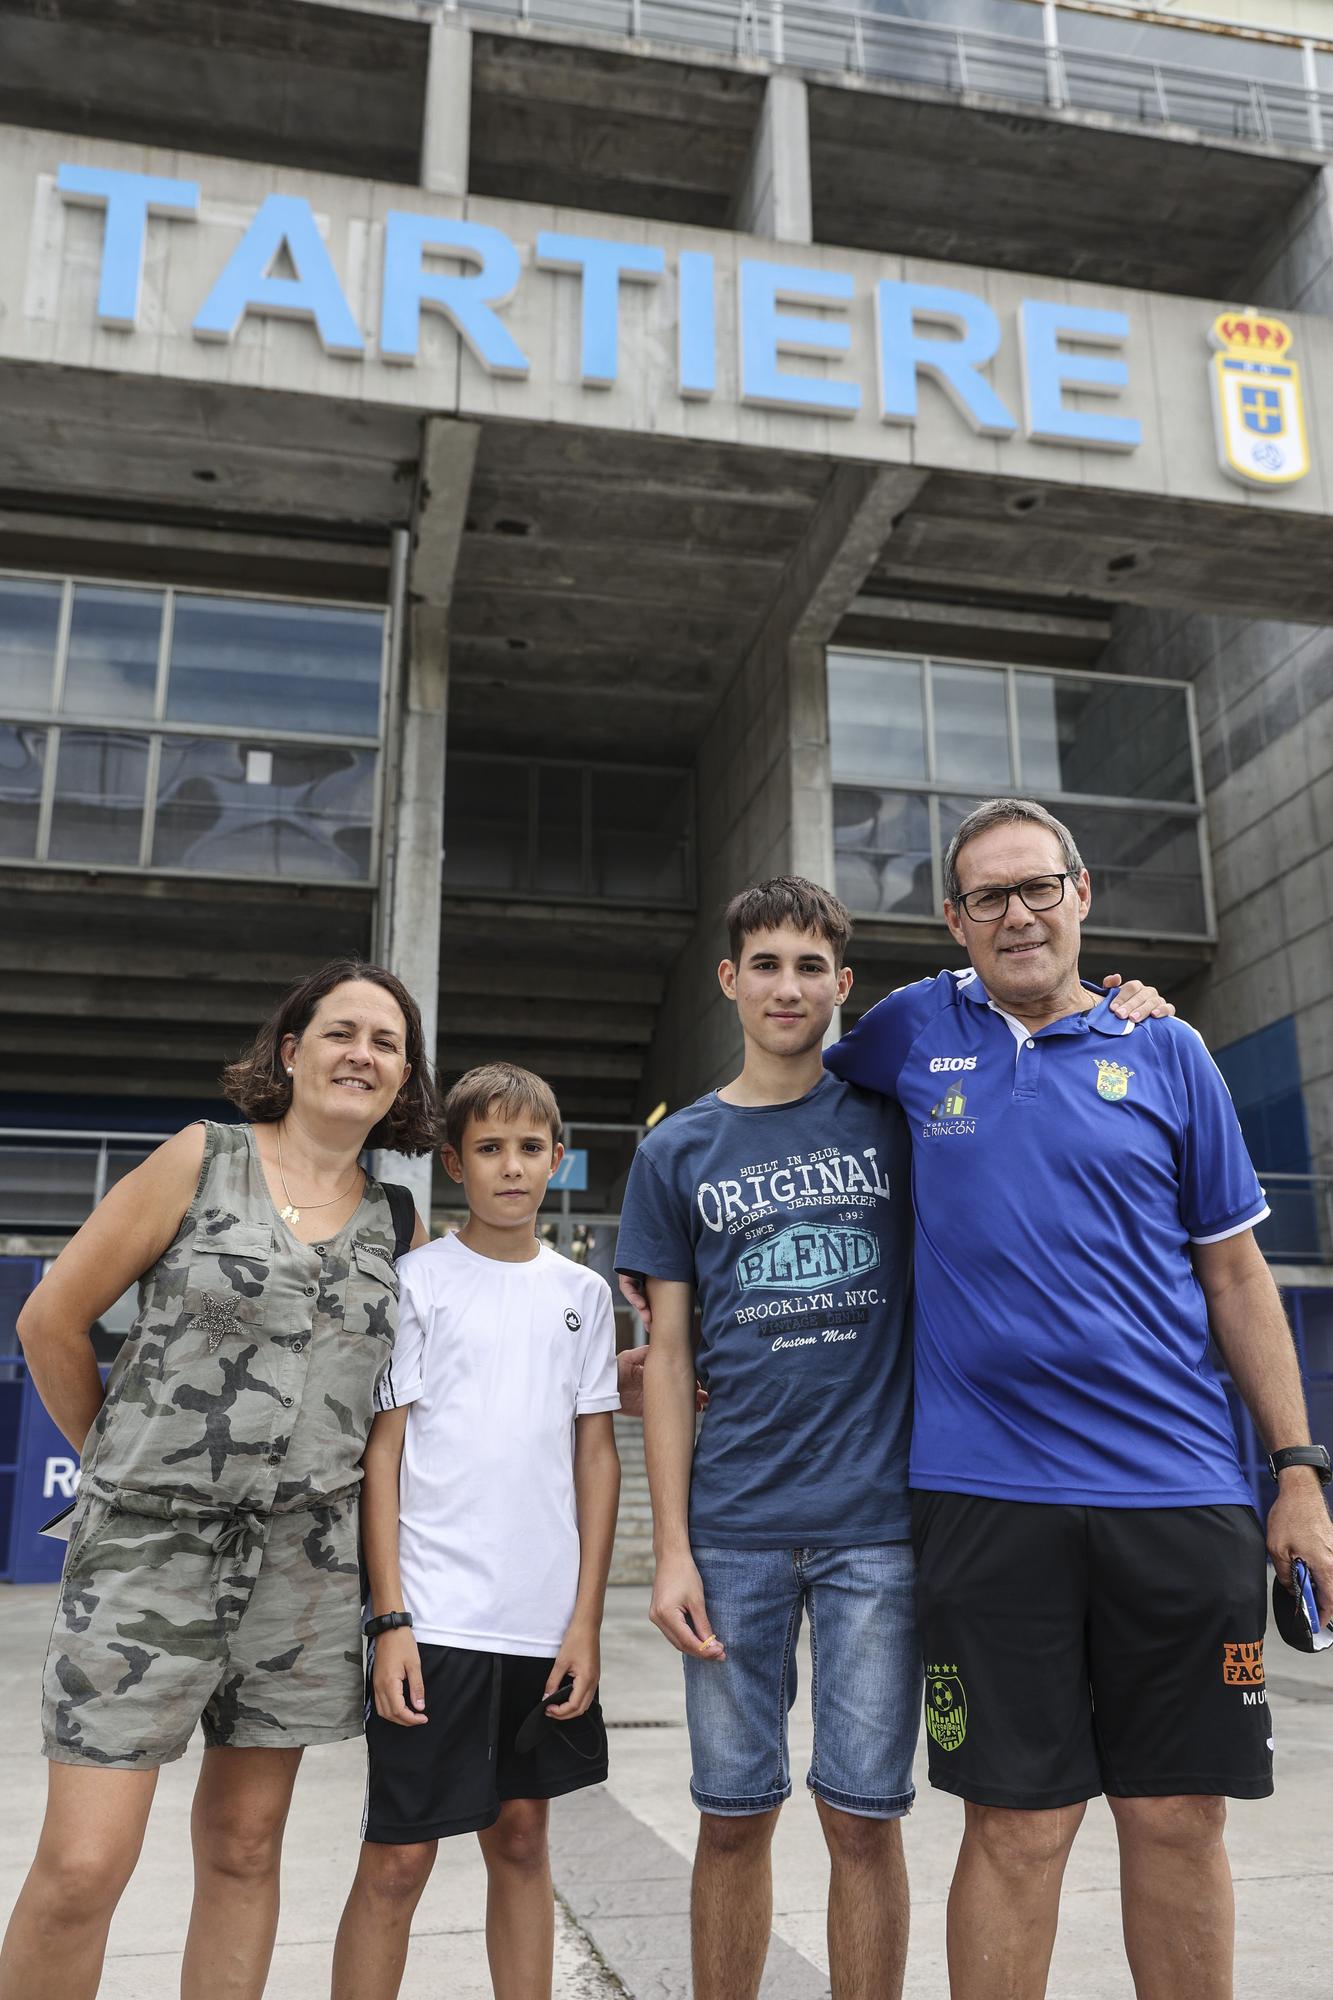 En imágenes: los aficionados del Real Oviedo vuelven al campo